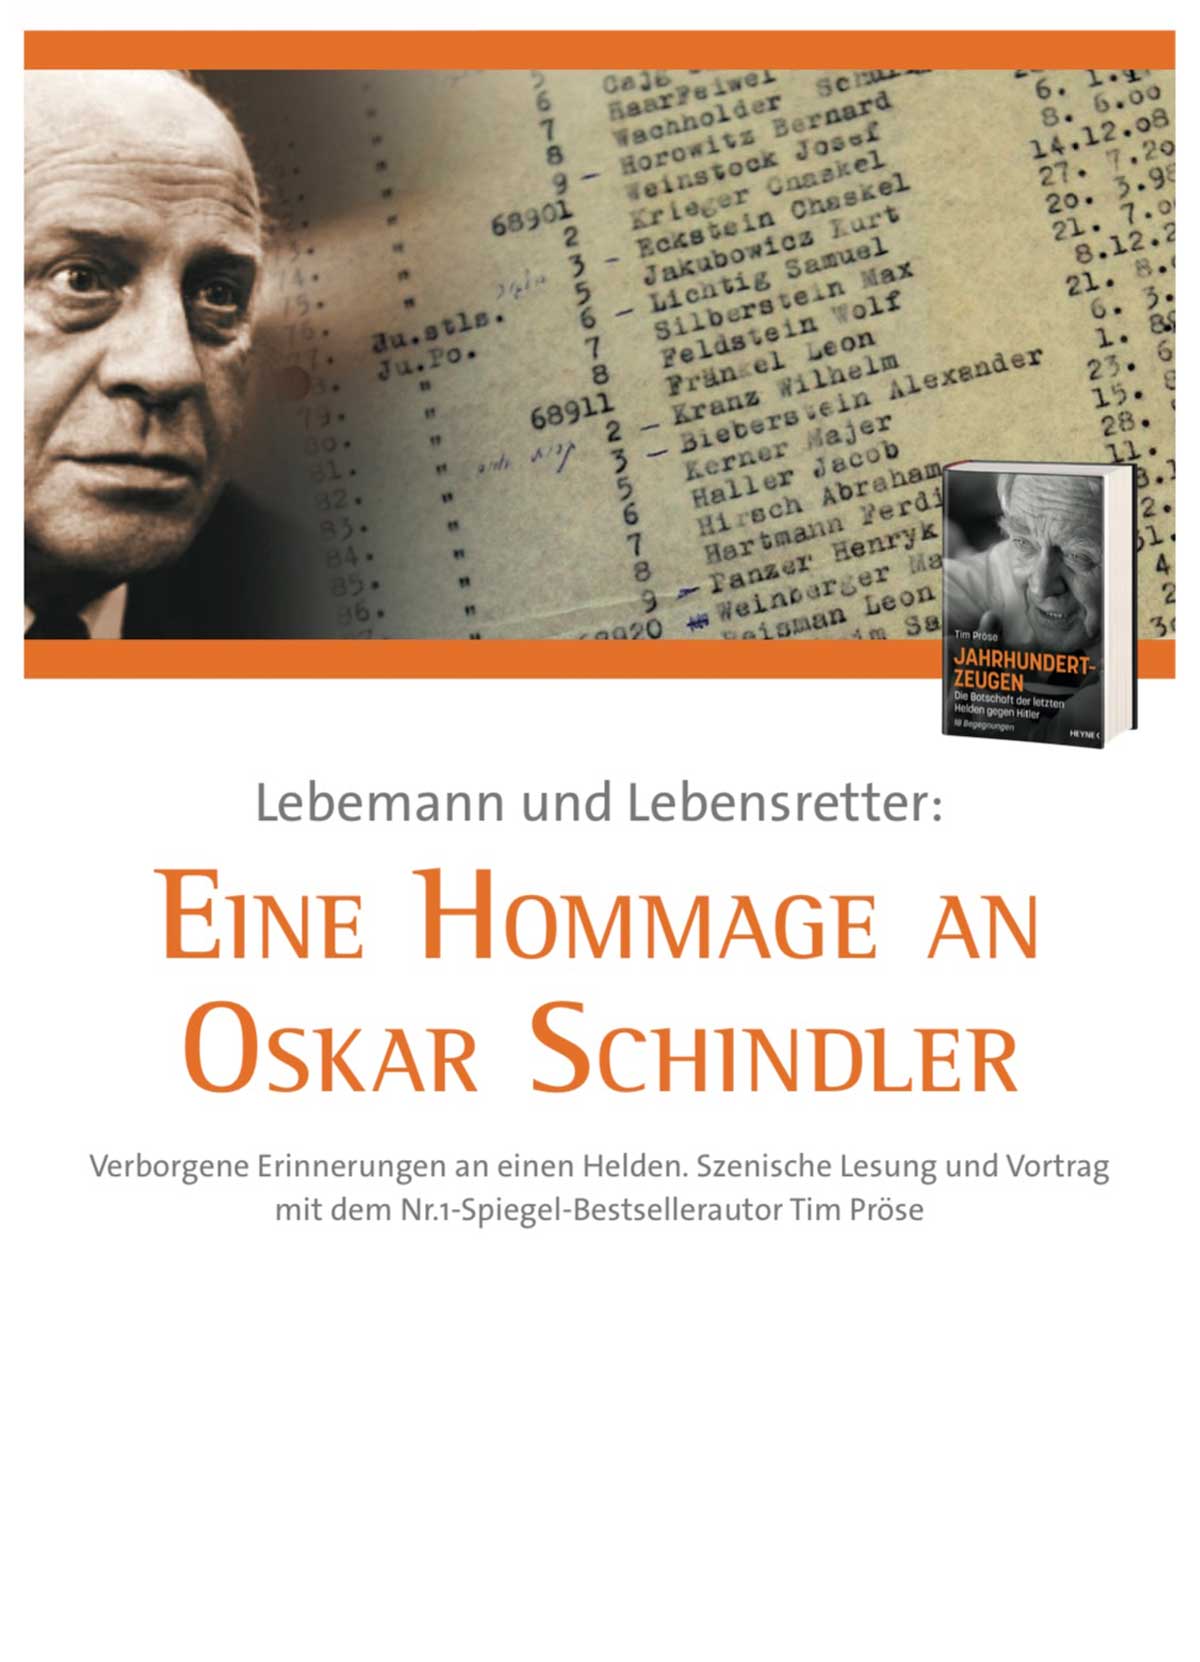 Eine Hommage an Oskar Schindler